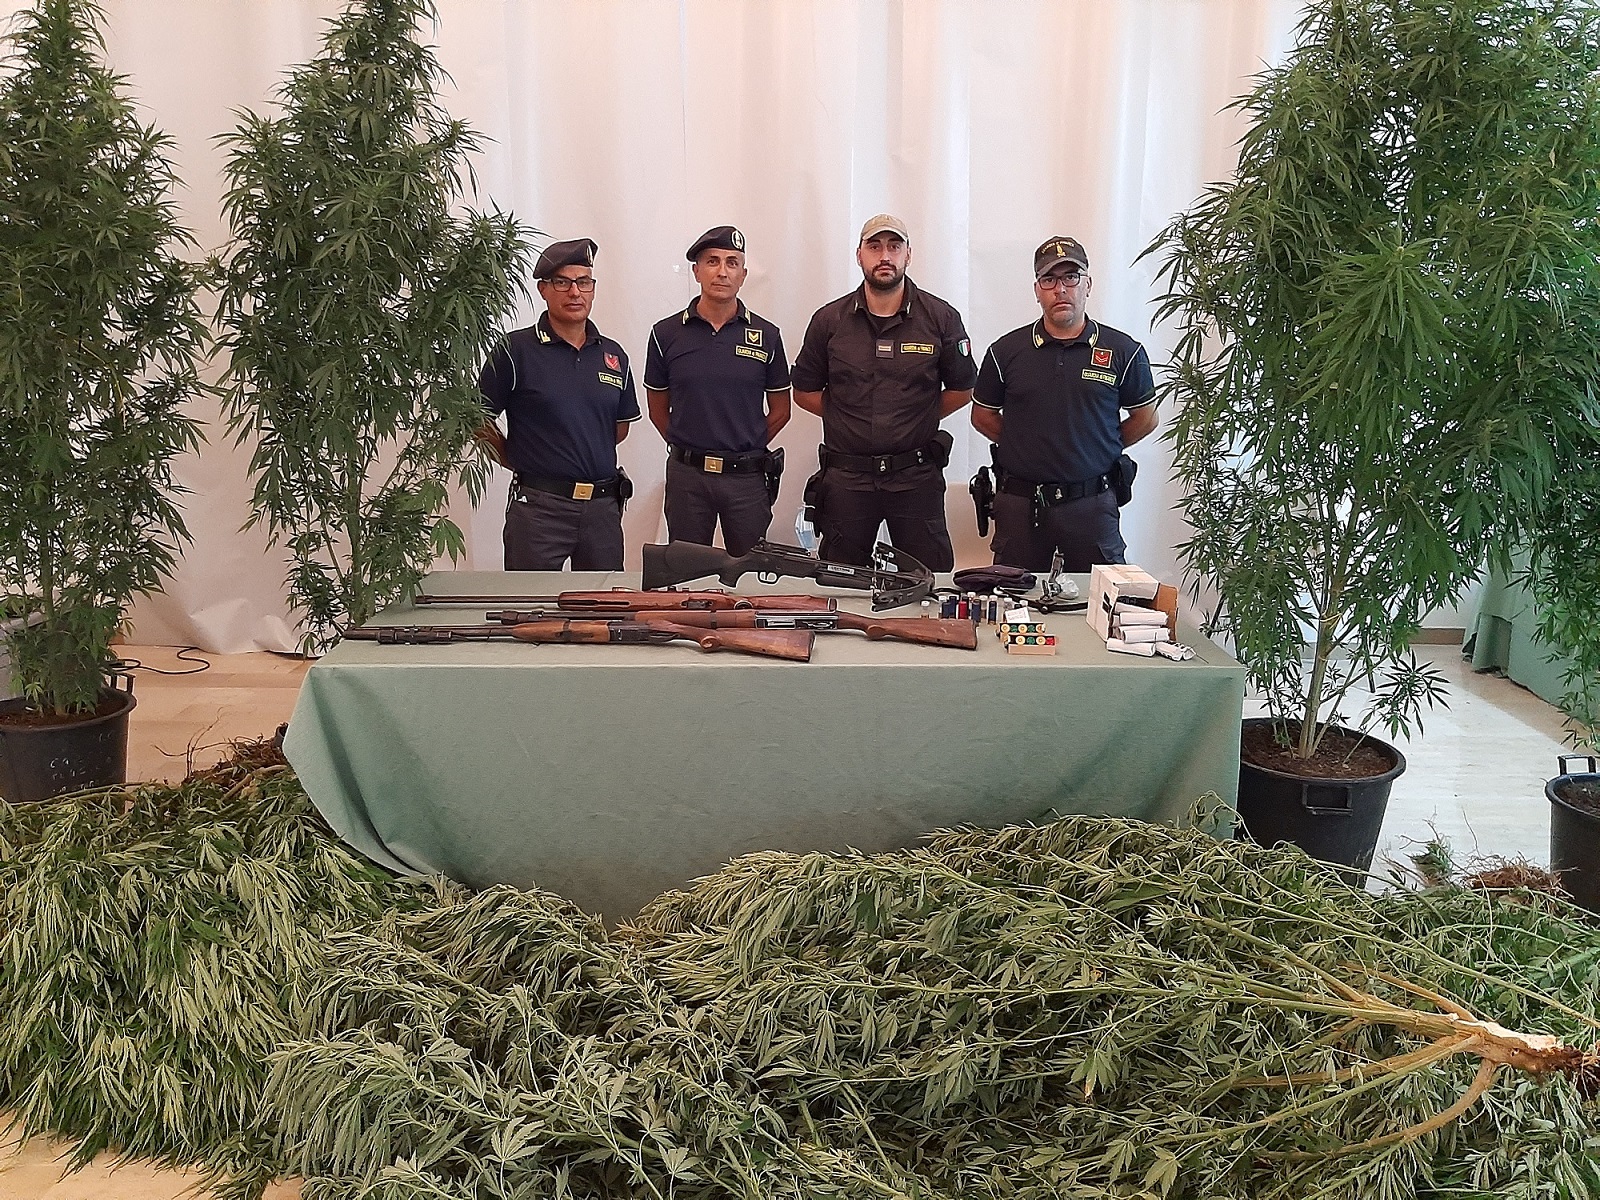 Armi e piante di cannabis nelle campagne di Policoro. 60enne arrestato dalla Guardia di Finanza